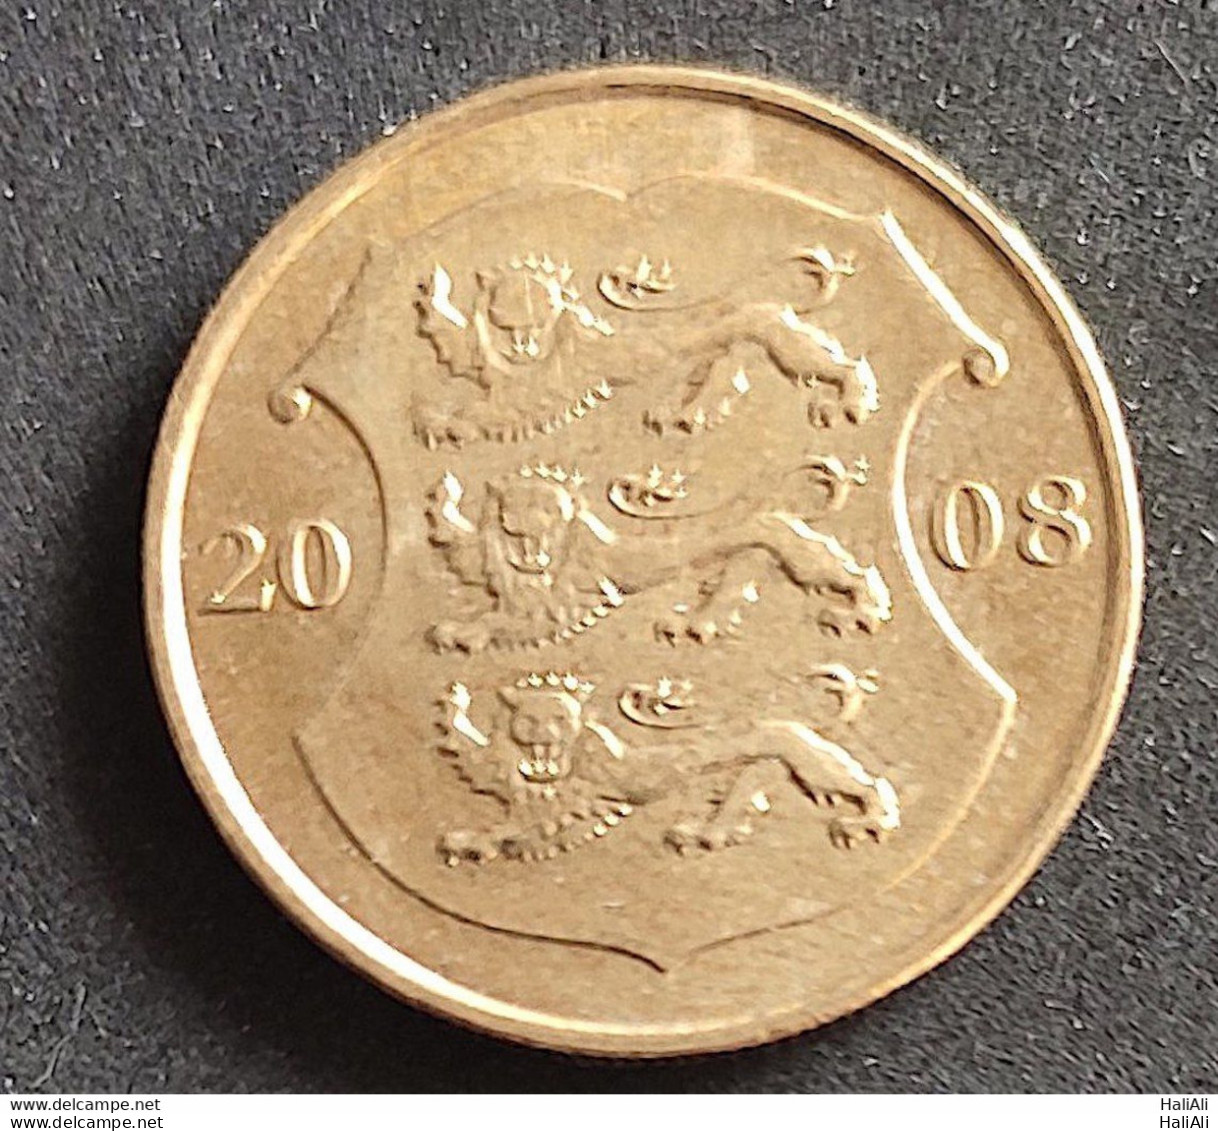 Coin Estonia 2008 1 Kroon 1 - Estonia